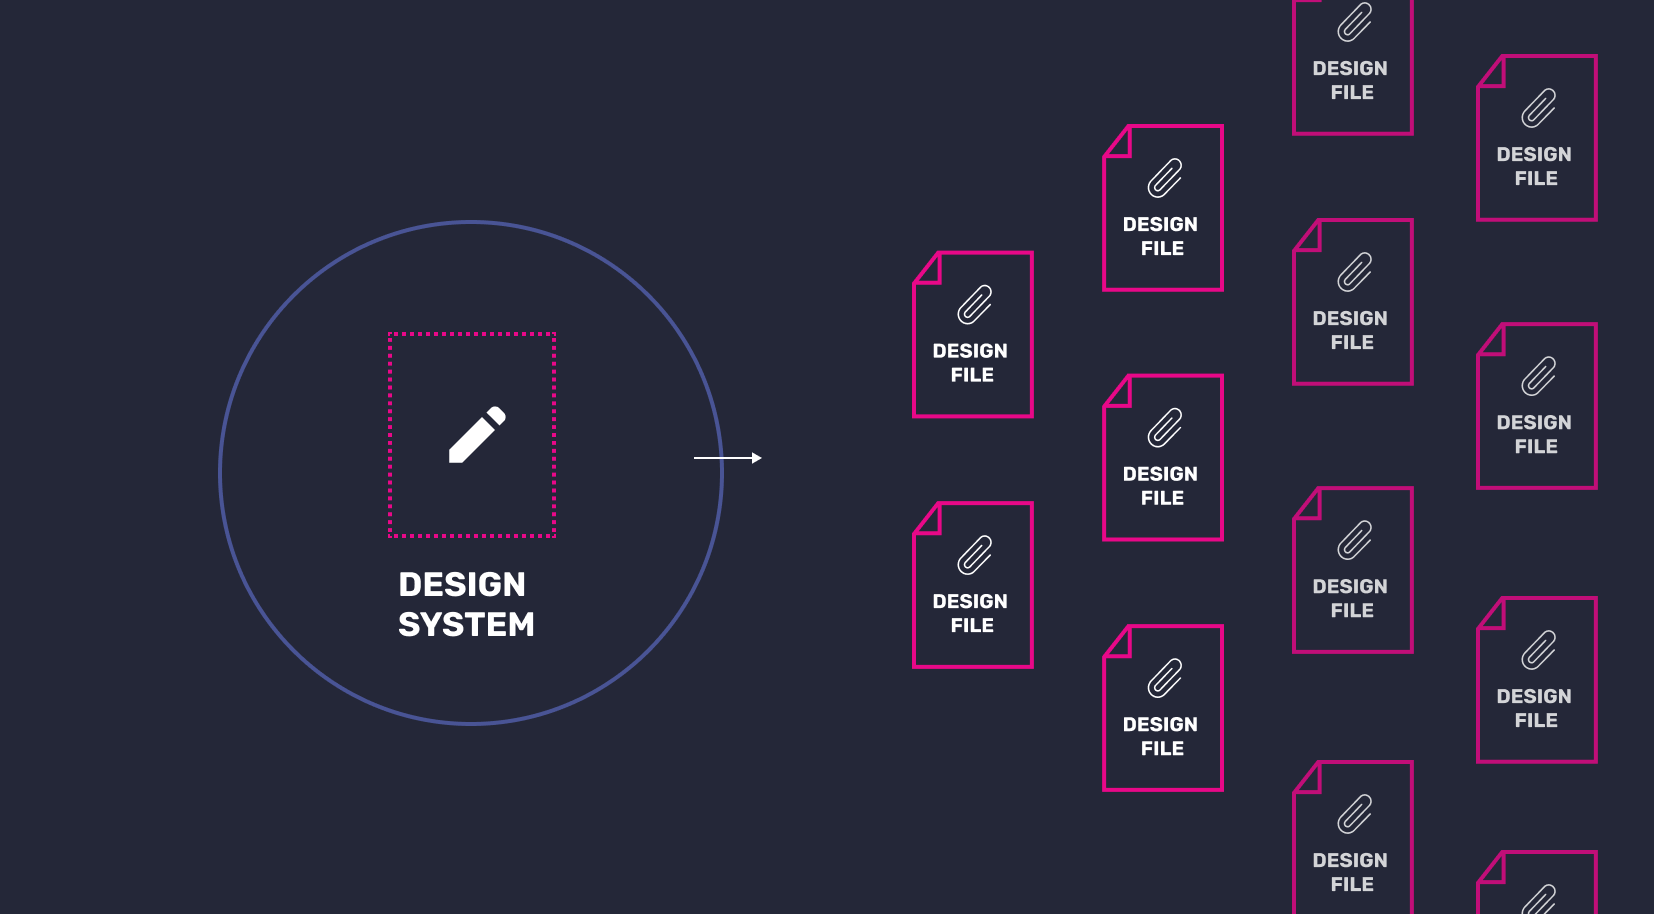 Een design system bestaat uit meerdere design files.